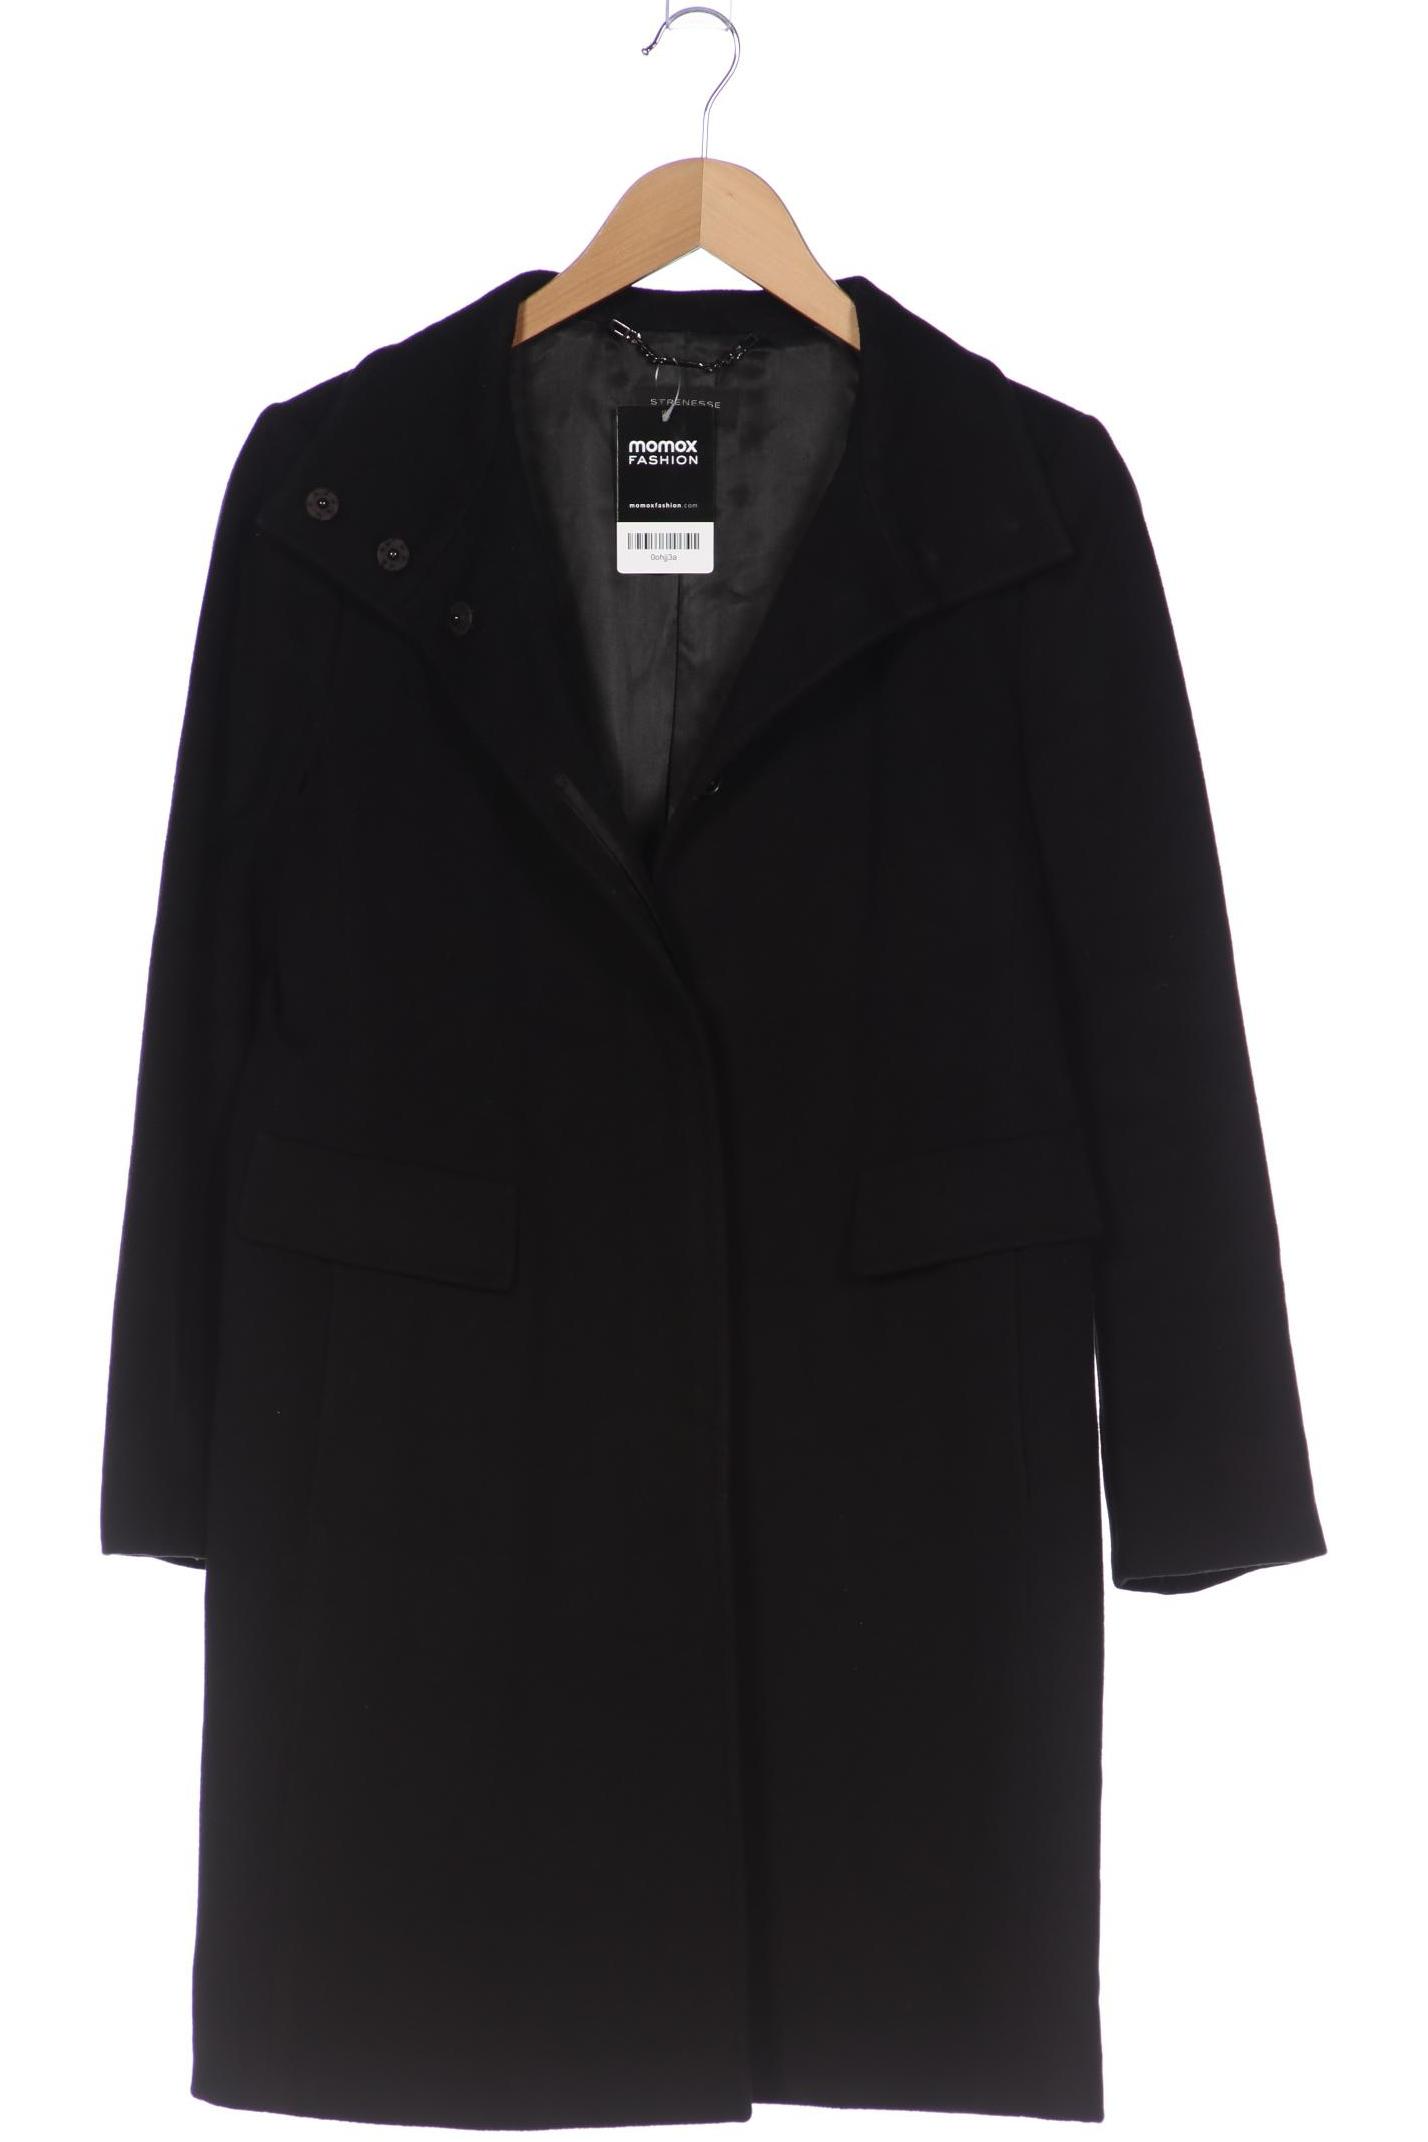 Strenesse Damen Mantel, schwarz, Gr. 40 von Strenesse